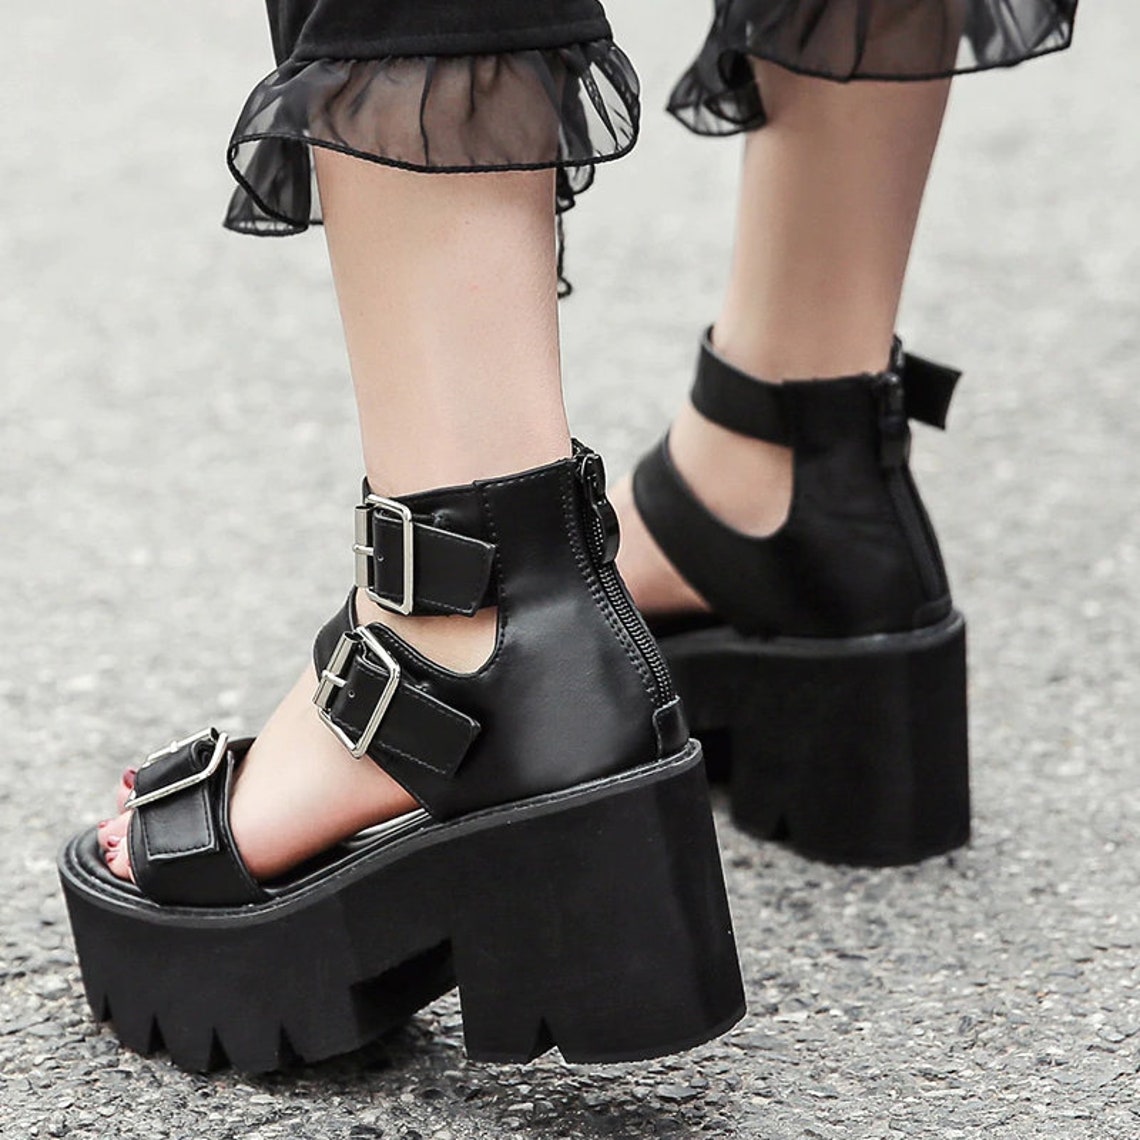 Gothic Summer Black Sandals With Platforms Dark Punk Goth | Etsy